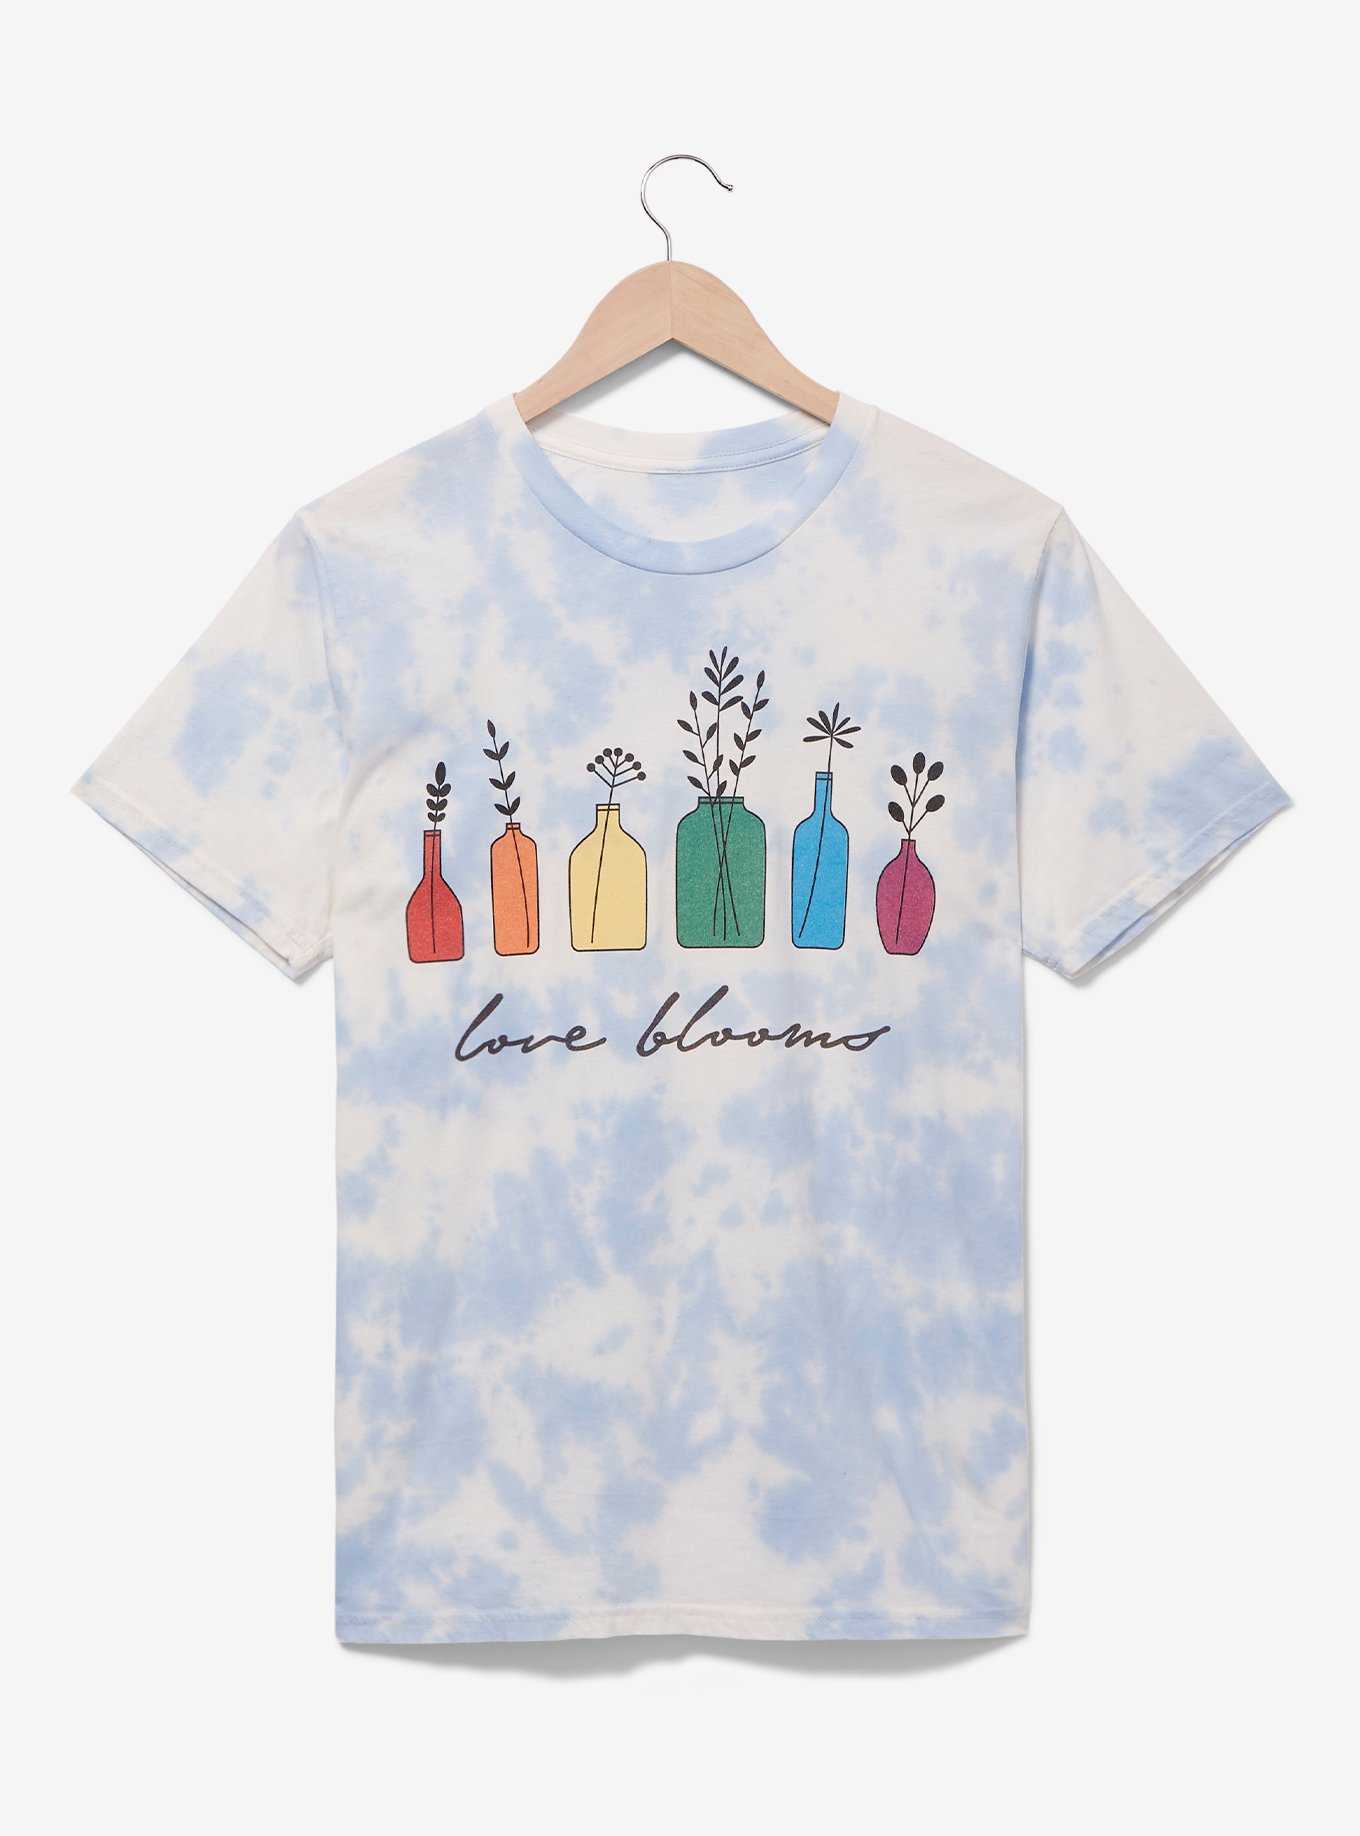 Love Blooms Tie-Dye Women's T-Shirt, , hi-res